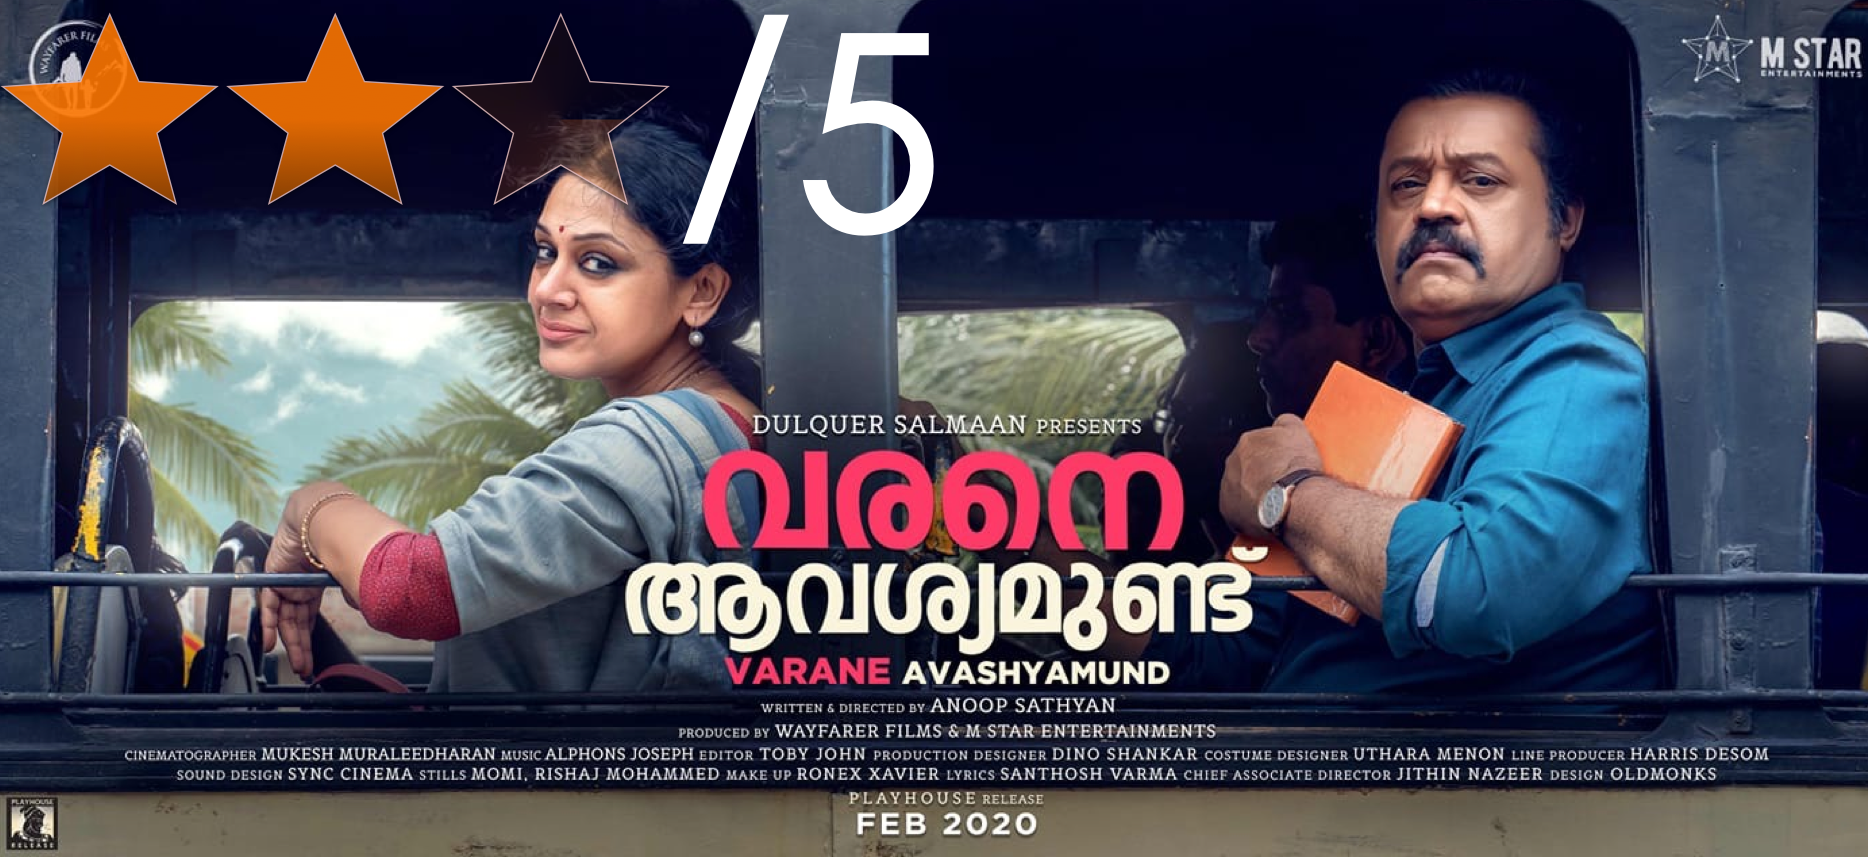 Varane Avashyamundu movie review